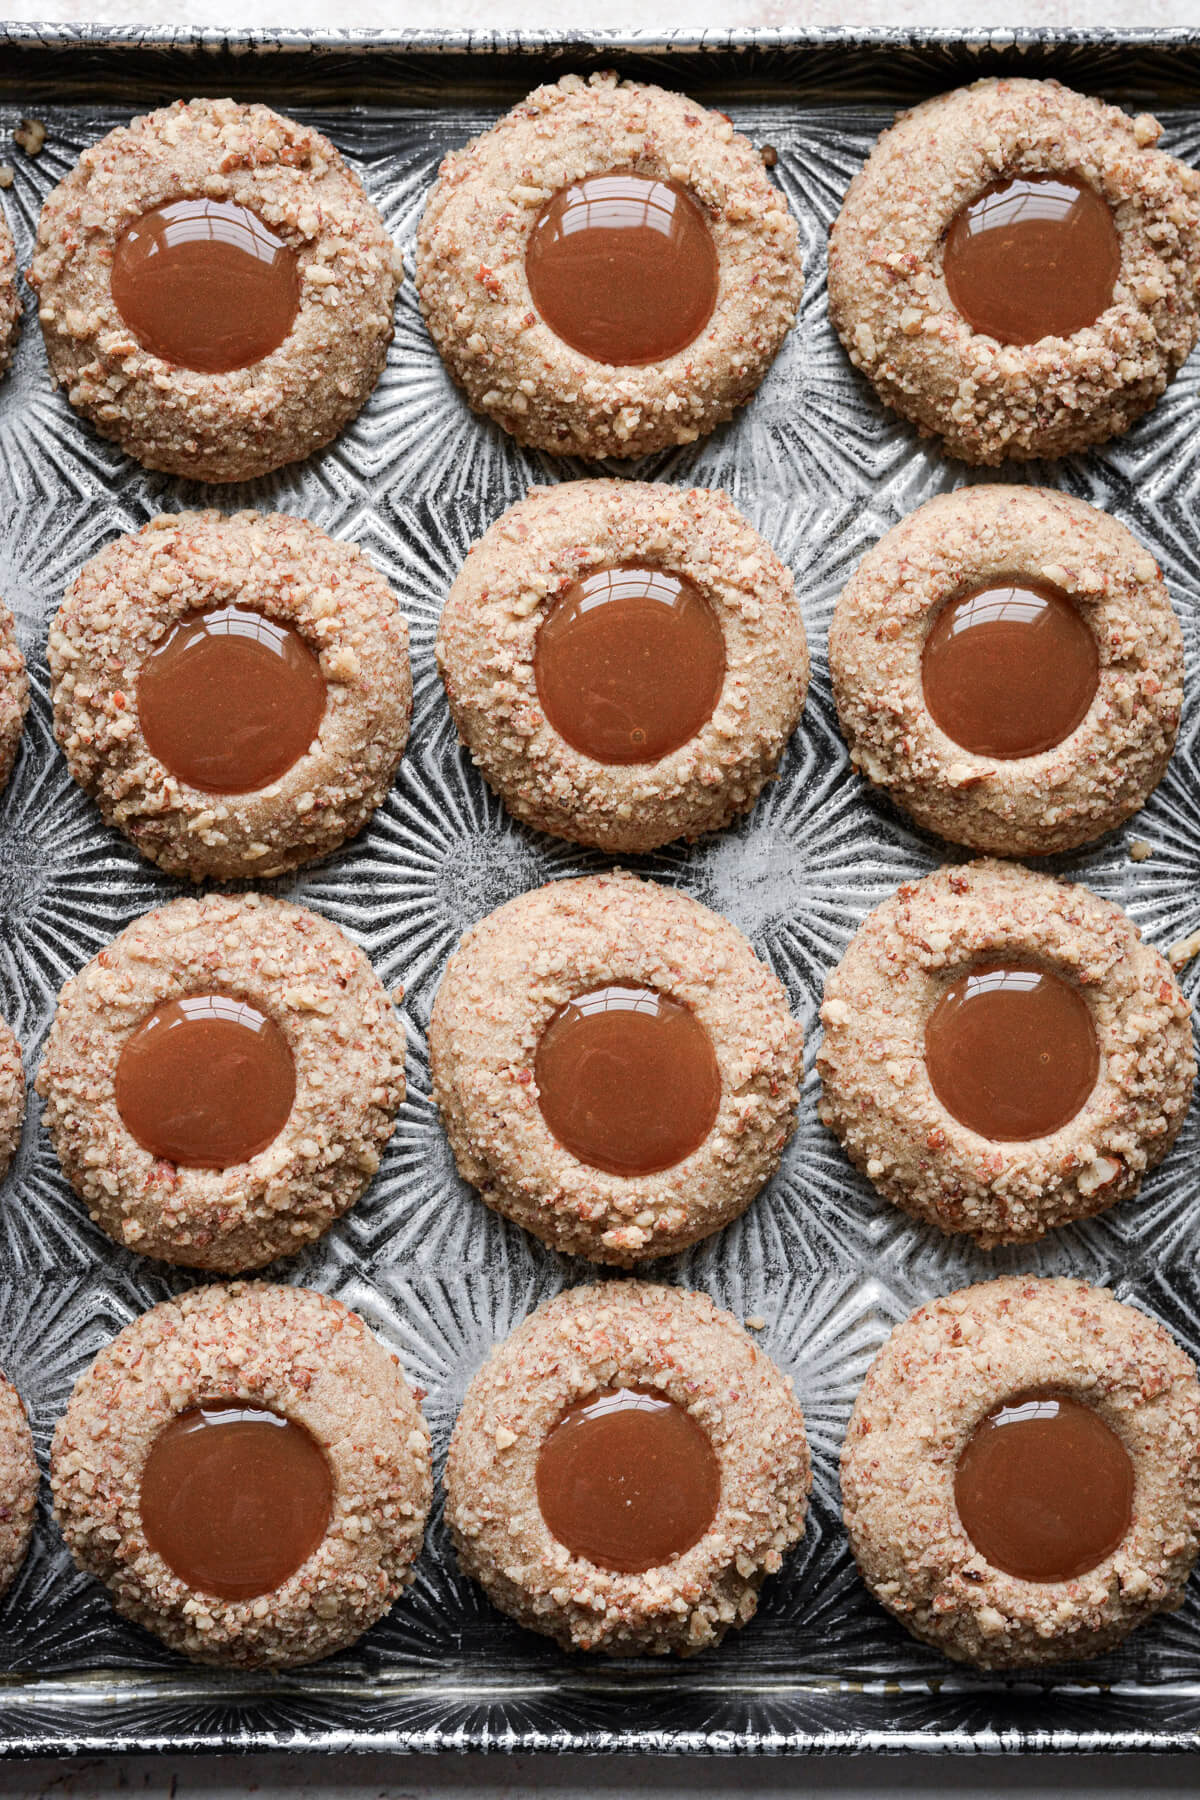 Gingerbread pecan caramel thumbprint cookies.